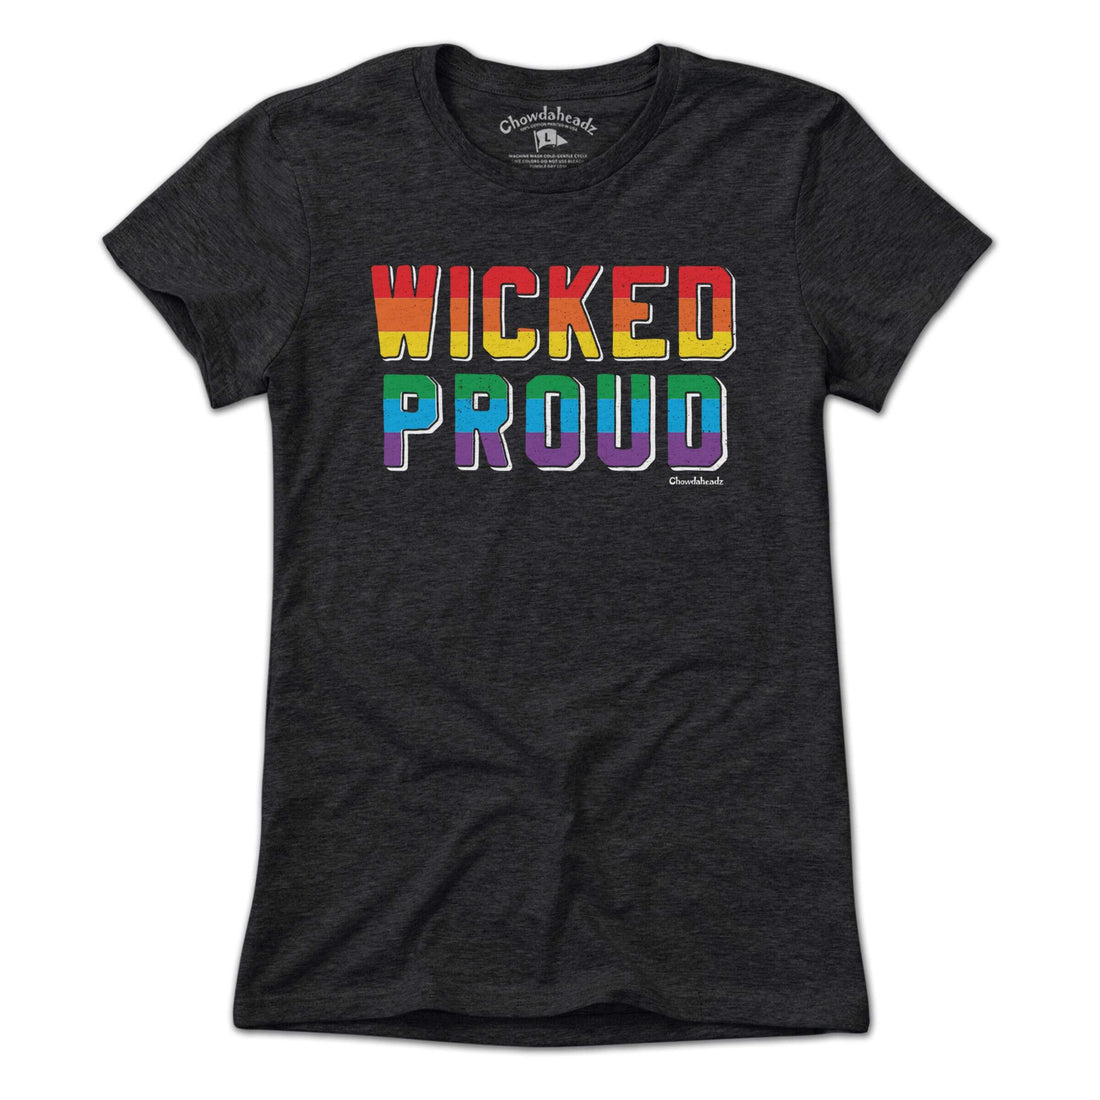 Wicked Proud T-Shirt - Chowdaheadz